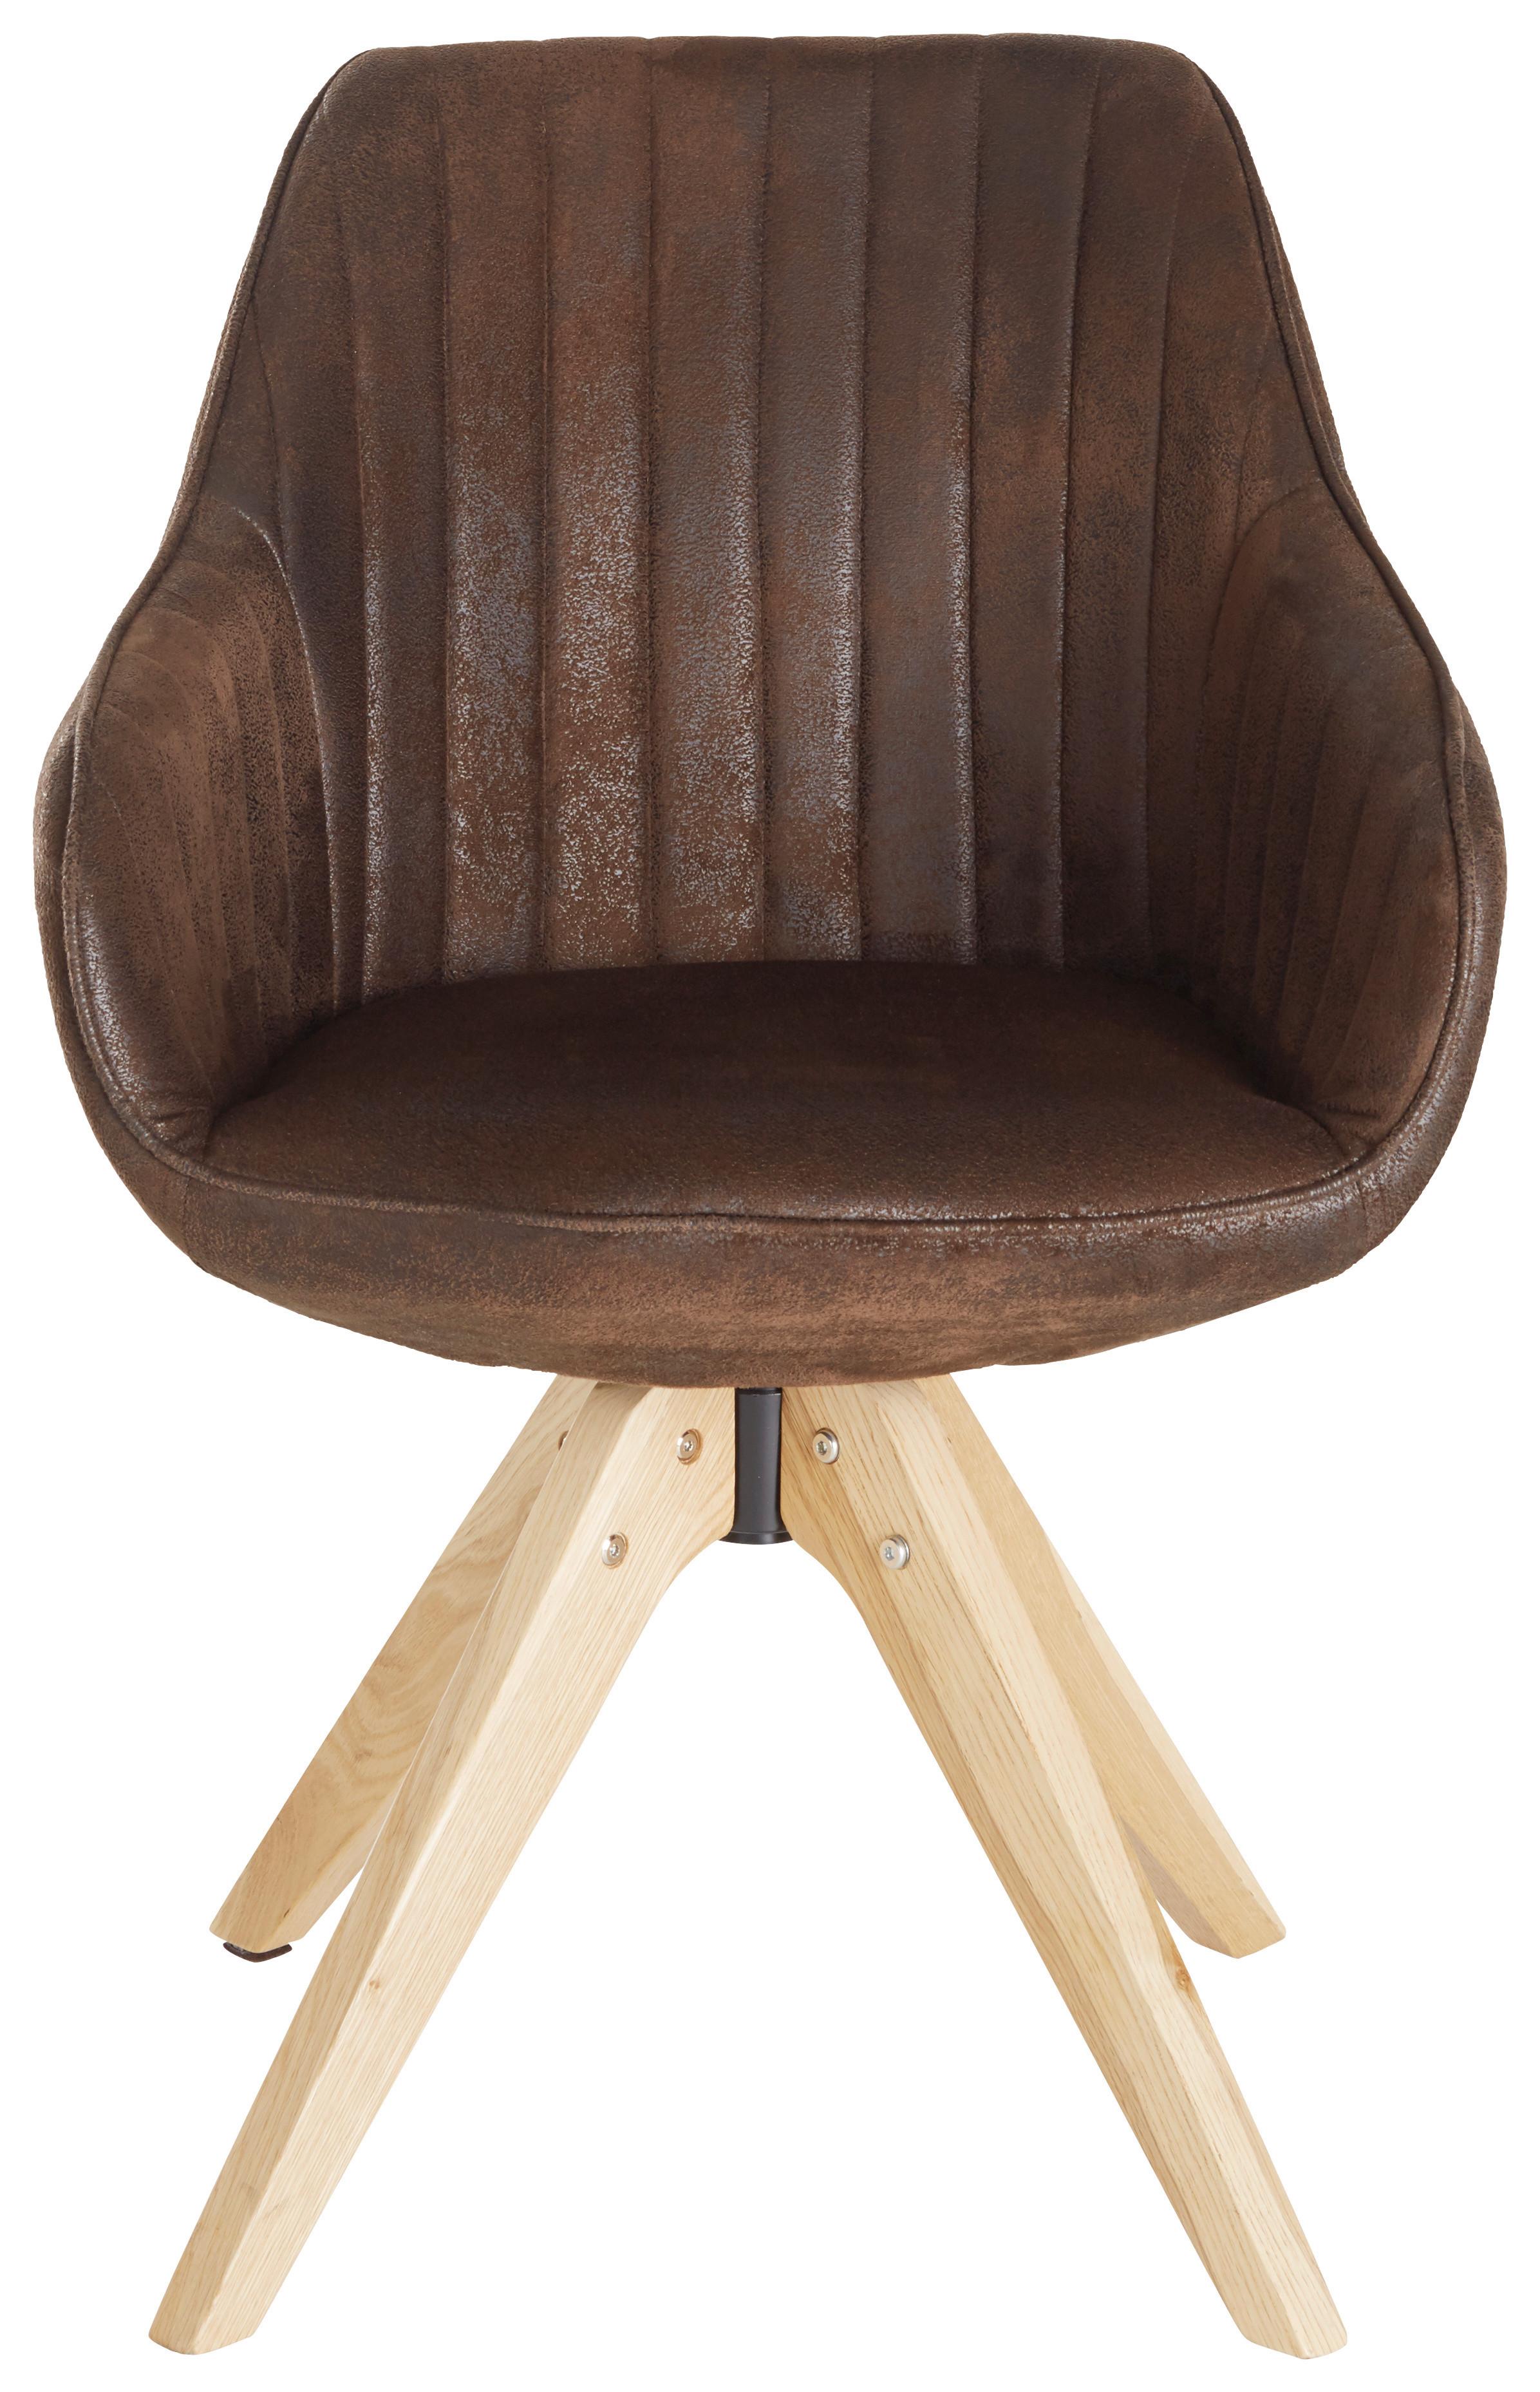 Židle S Područkami Chill - tmavě hnědá/barvy dubu, dřevo/textil (60/83/65cm) - Modern Living